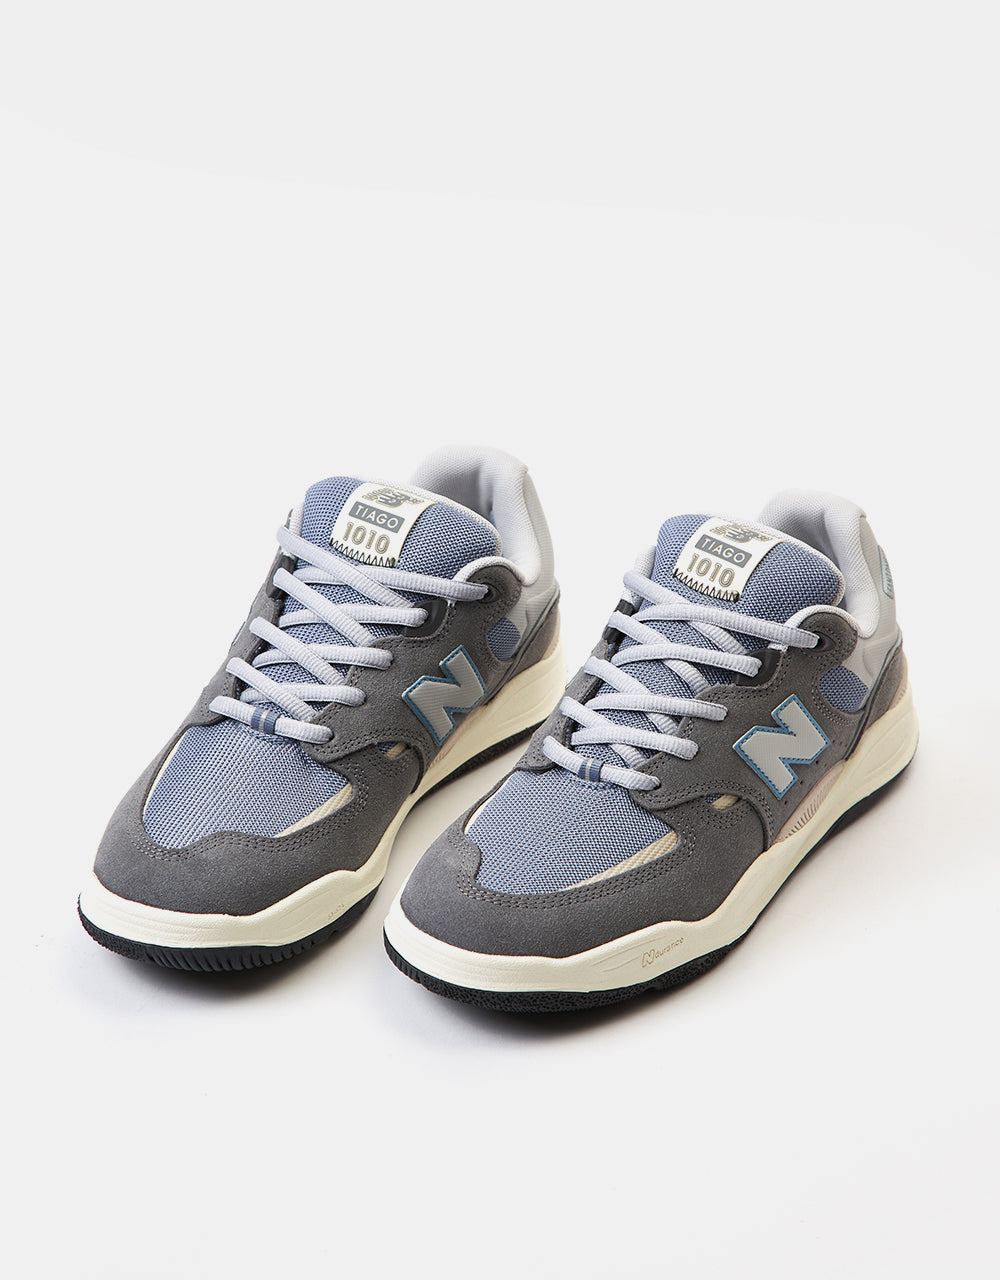 New Balance Numeric Tiago Lemos 1010 Skate Shoes - Grey/Aqua